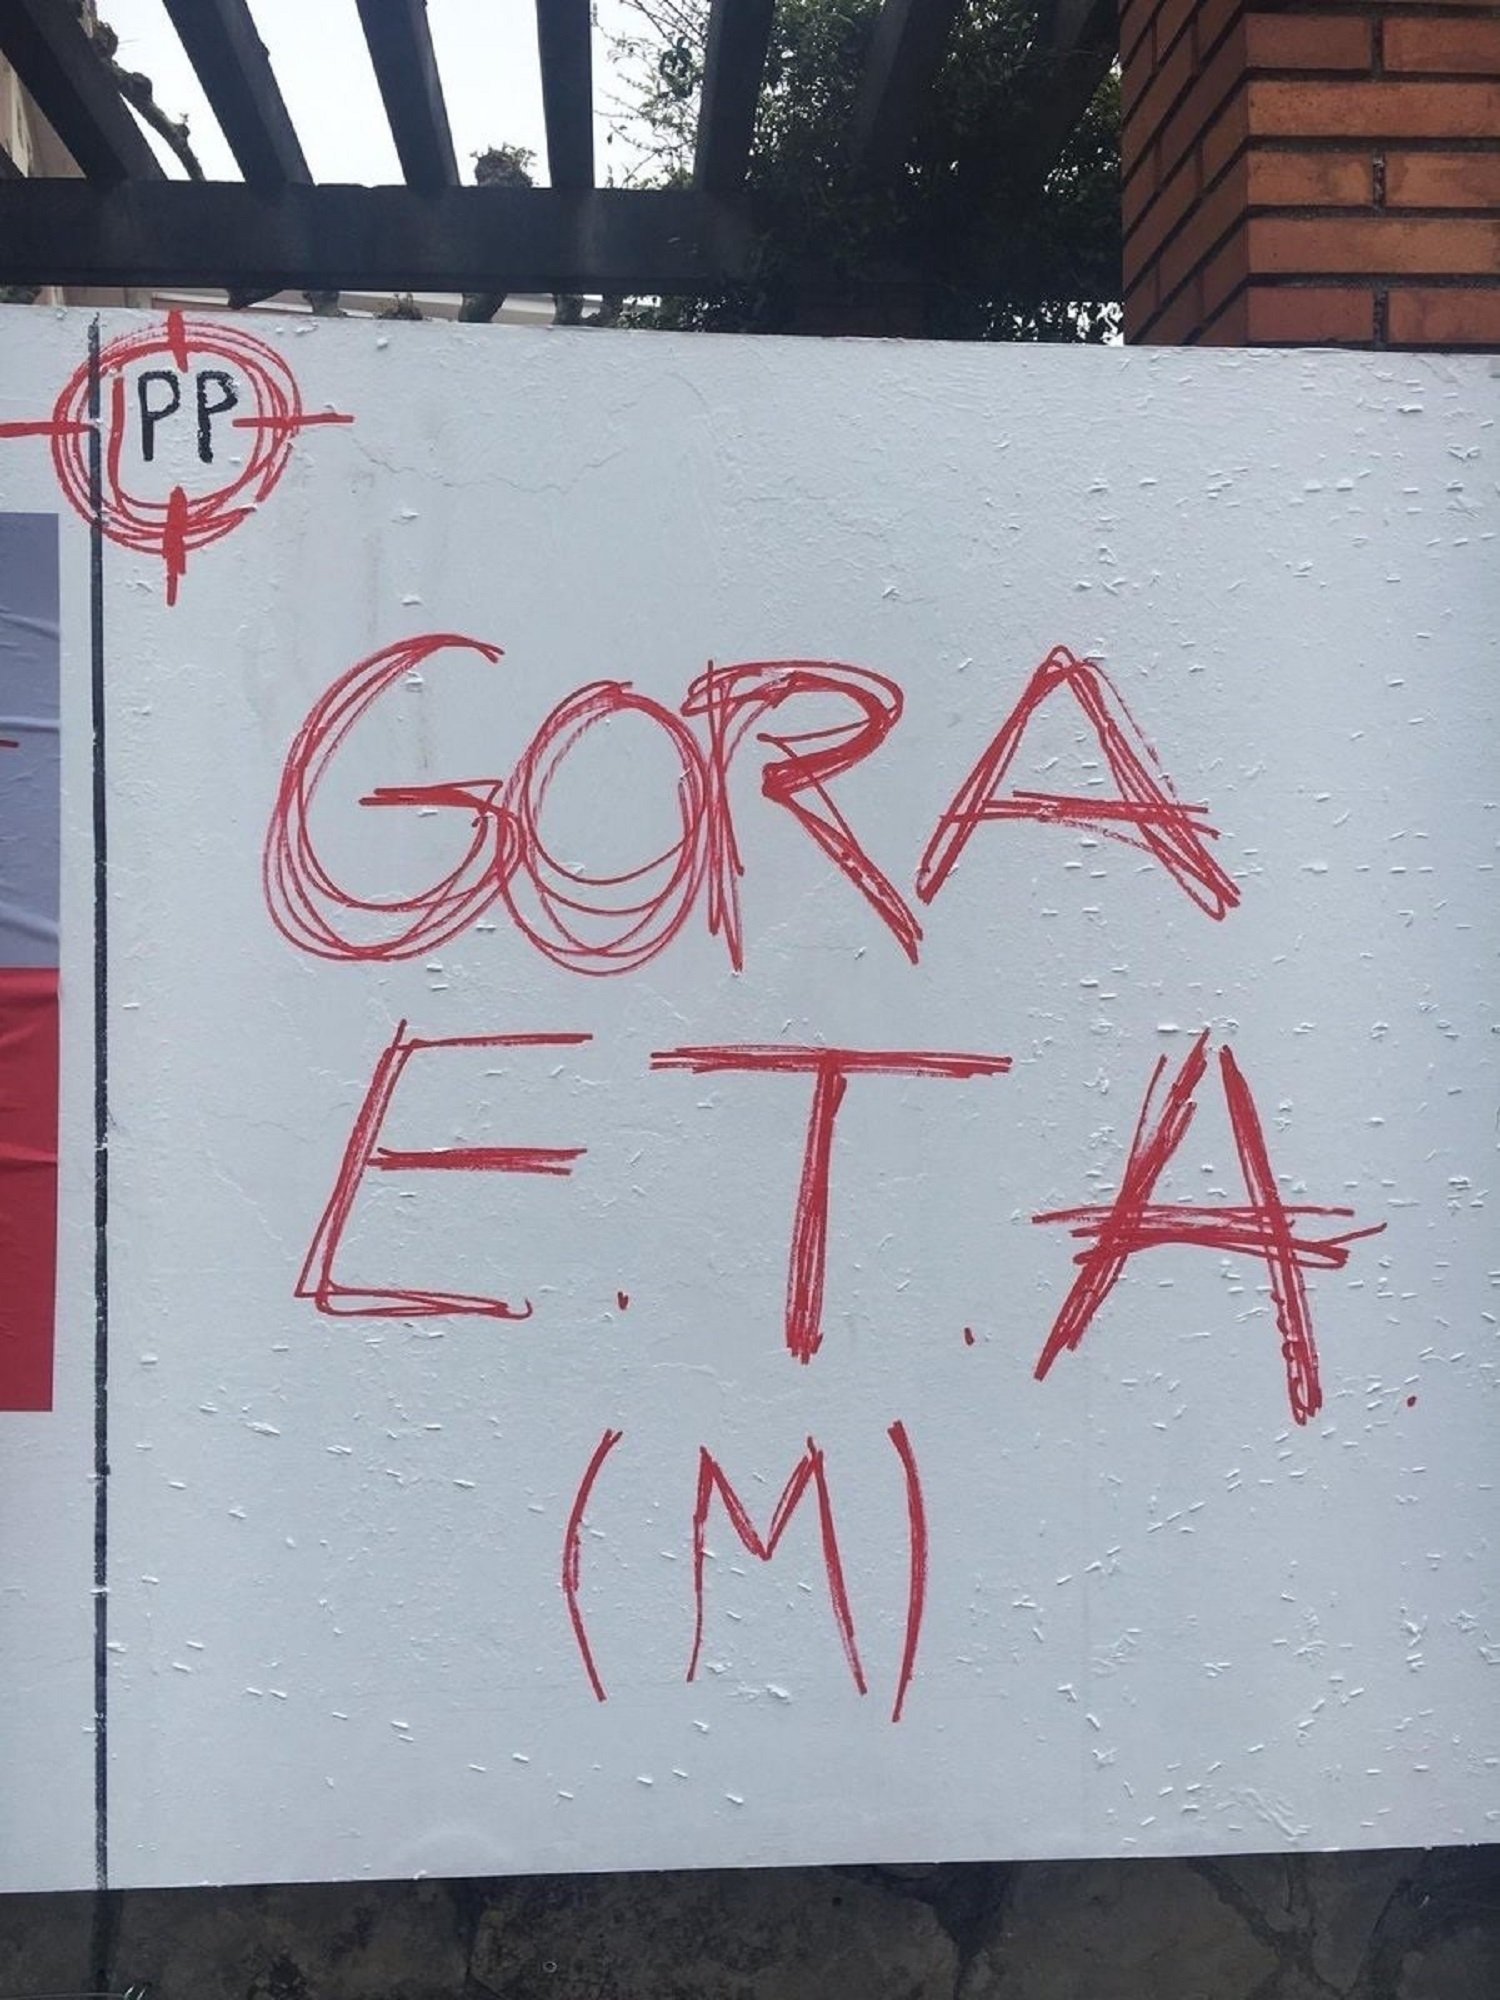 El PP denuncia pintadas contra el partido y a favor de ETA